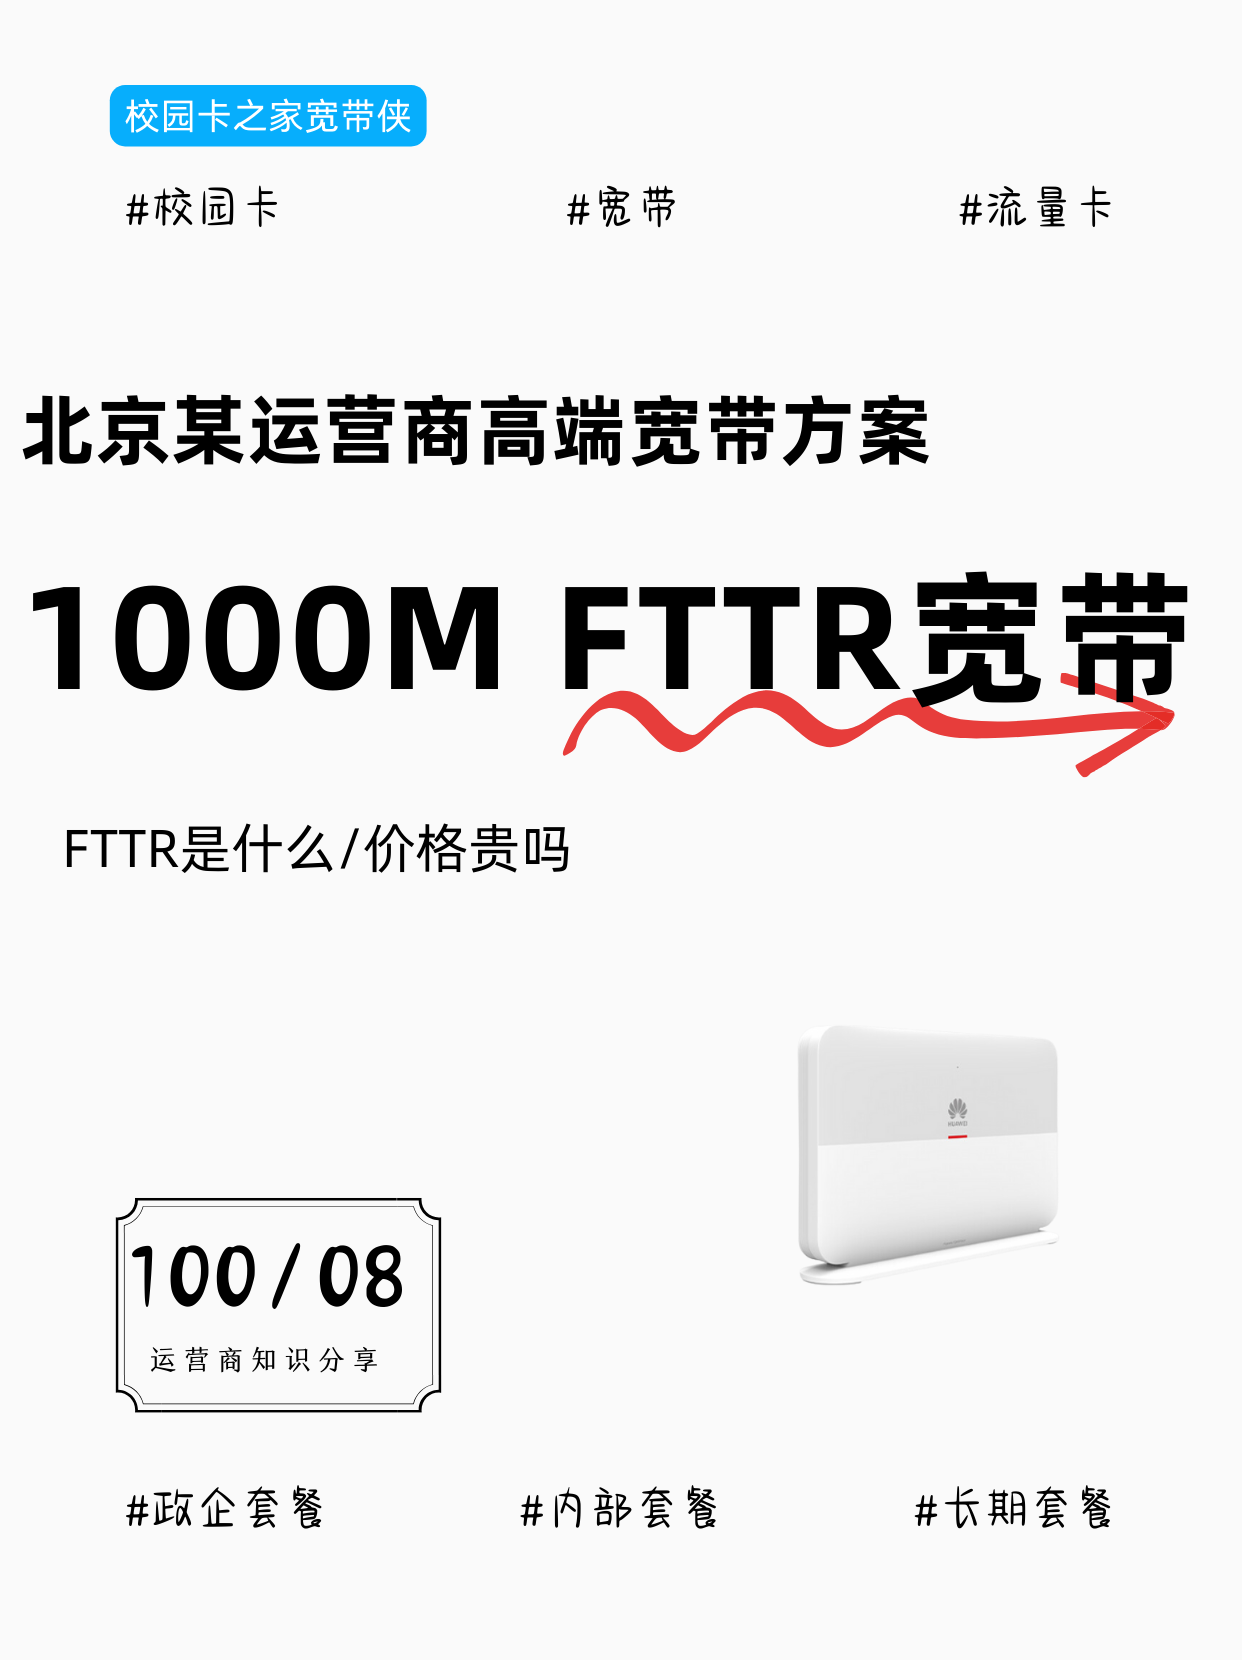 北京某运营商114月租高端千兆FTTR宽带方案值得办理吗？插图